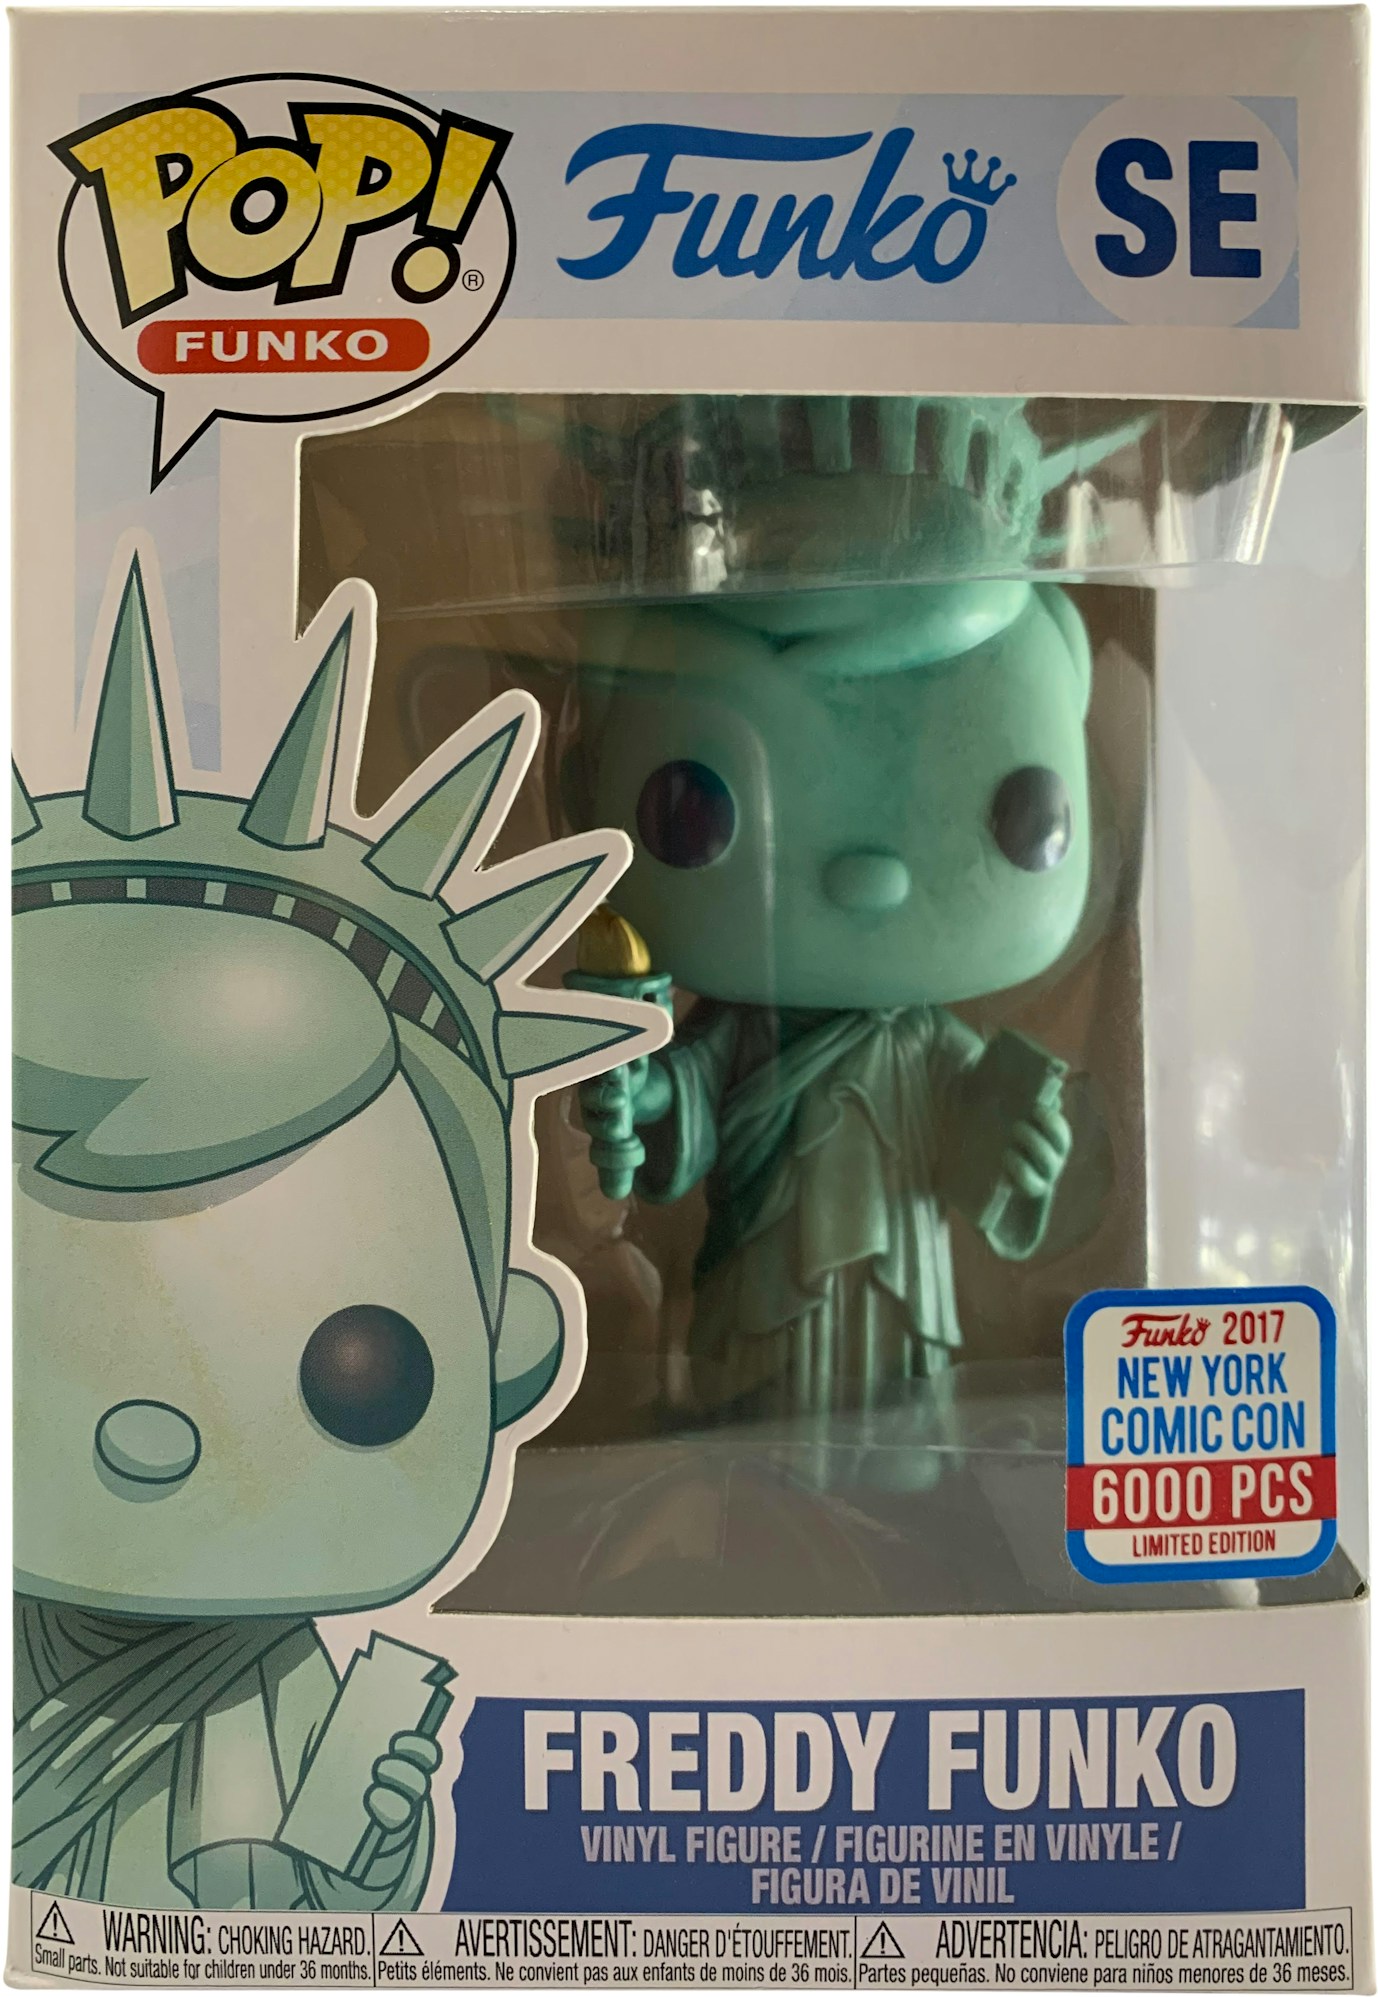 Funko Pop! Freddy Funko (Statue of Liberty) NYCC Special Edition